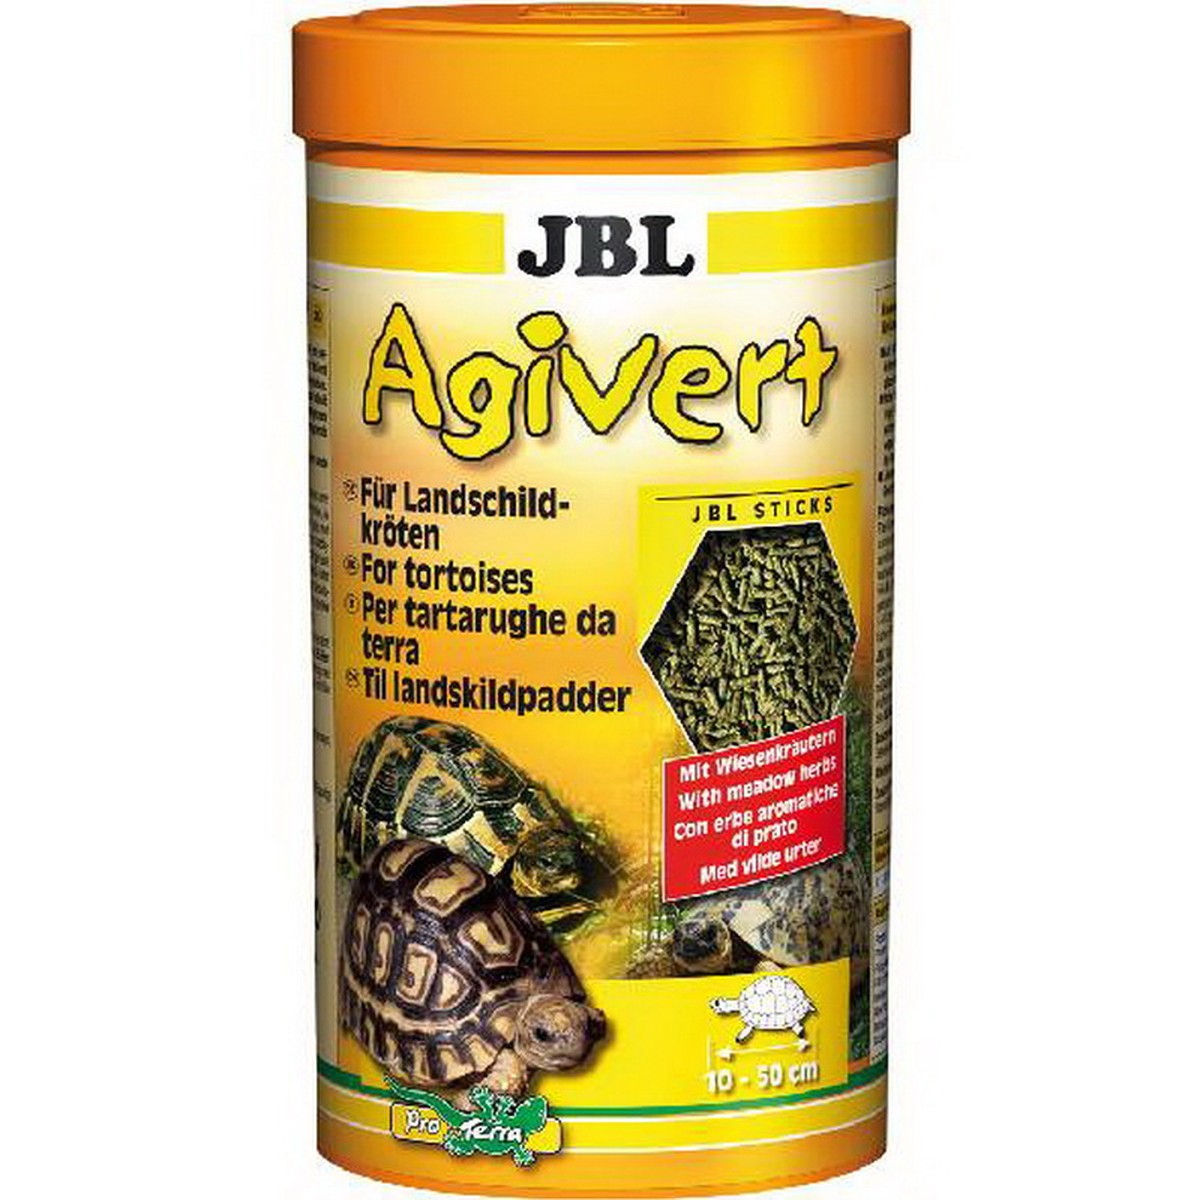   JBL Agivert sticks 250 ml F/NL  250ml